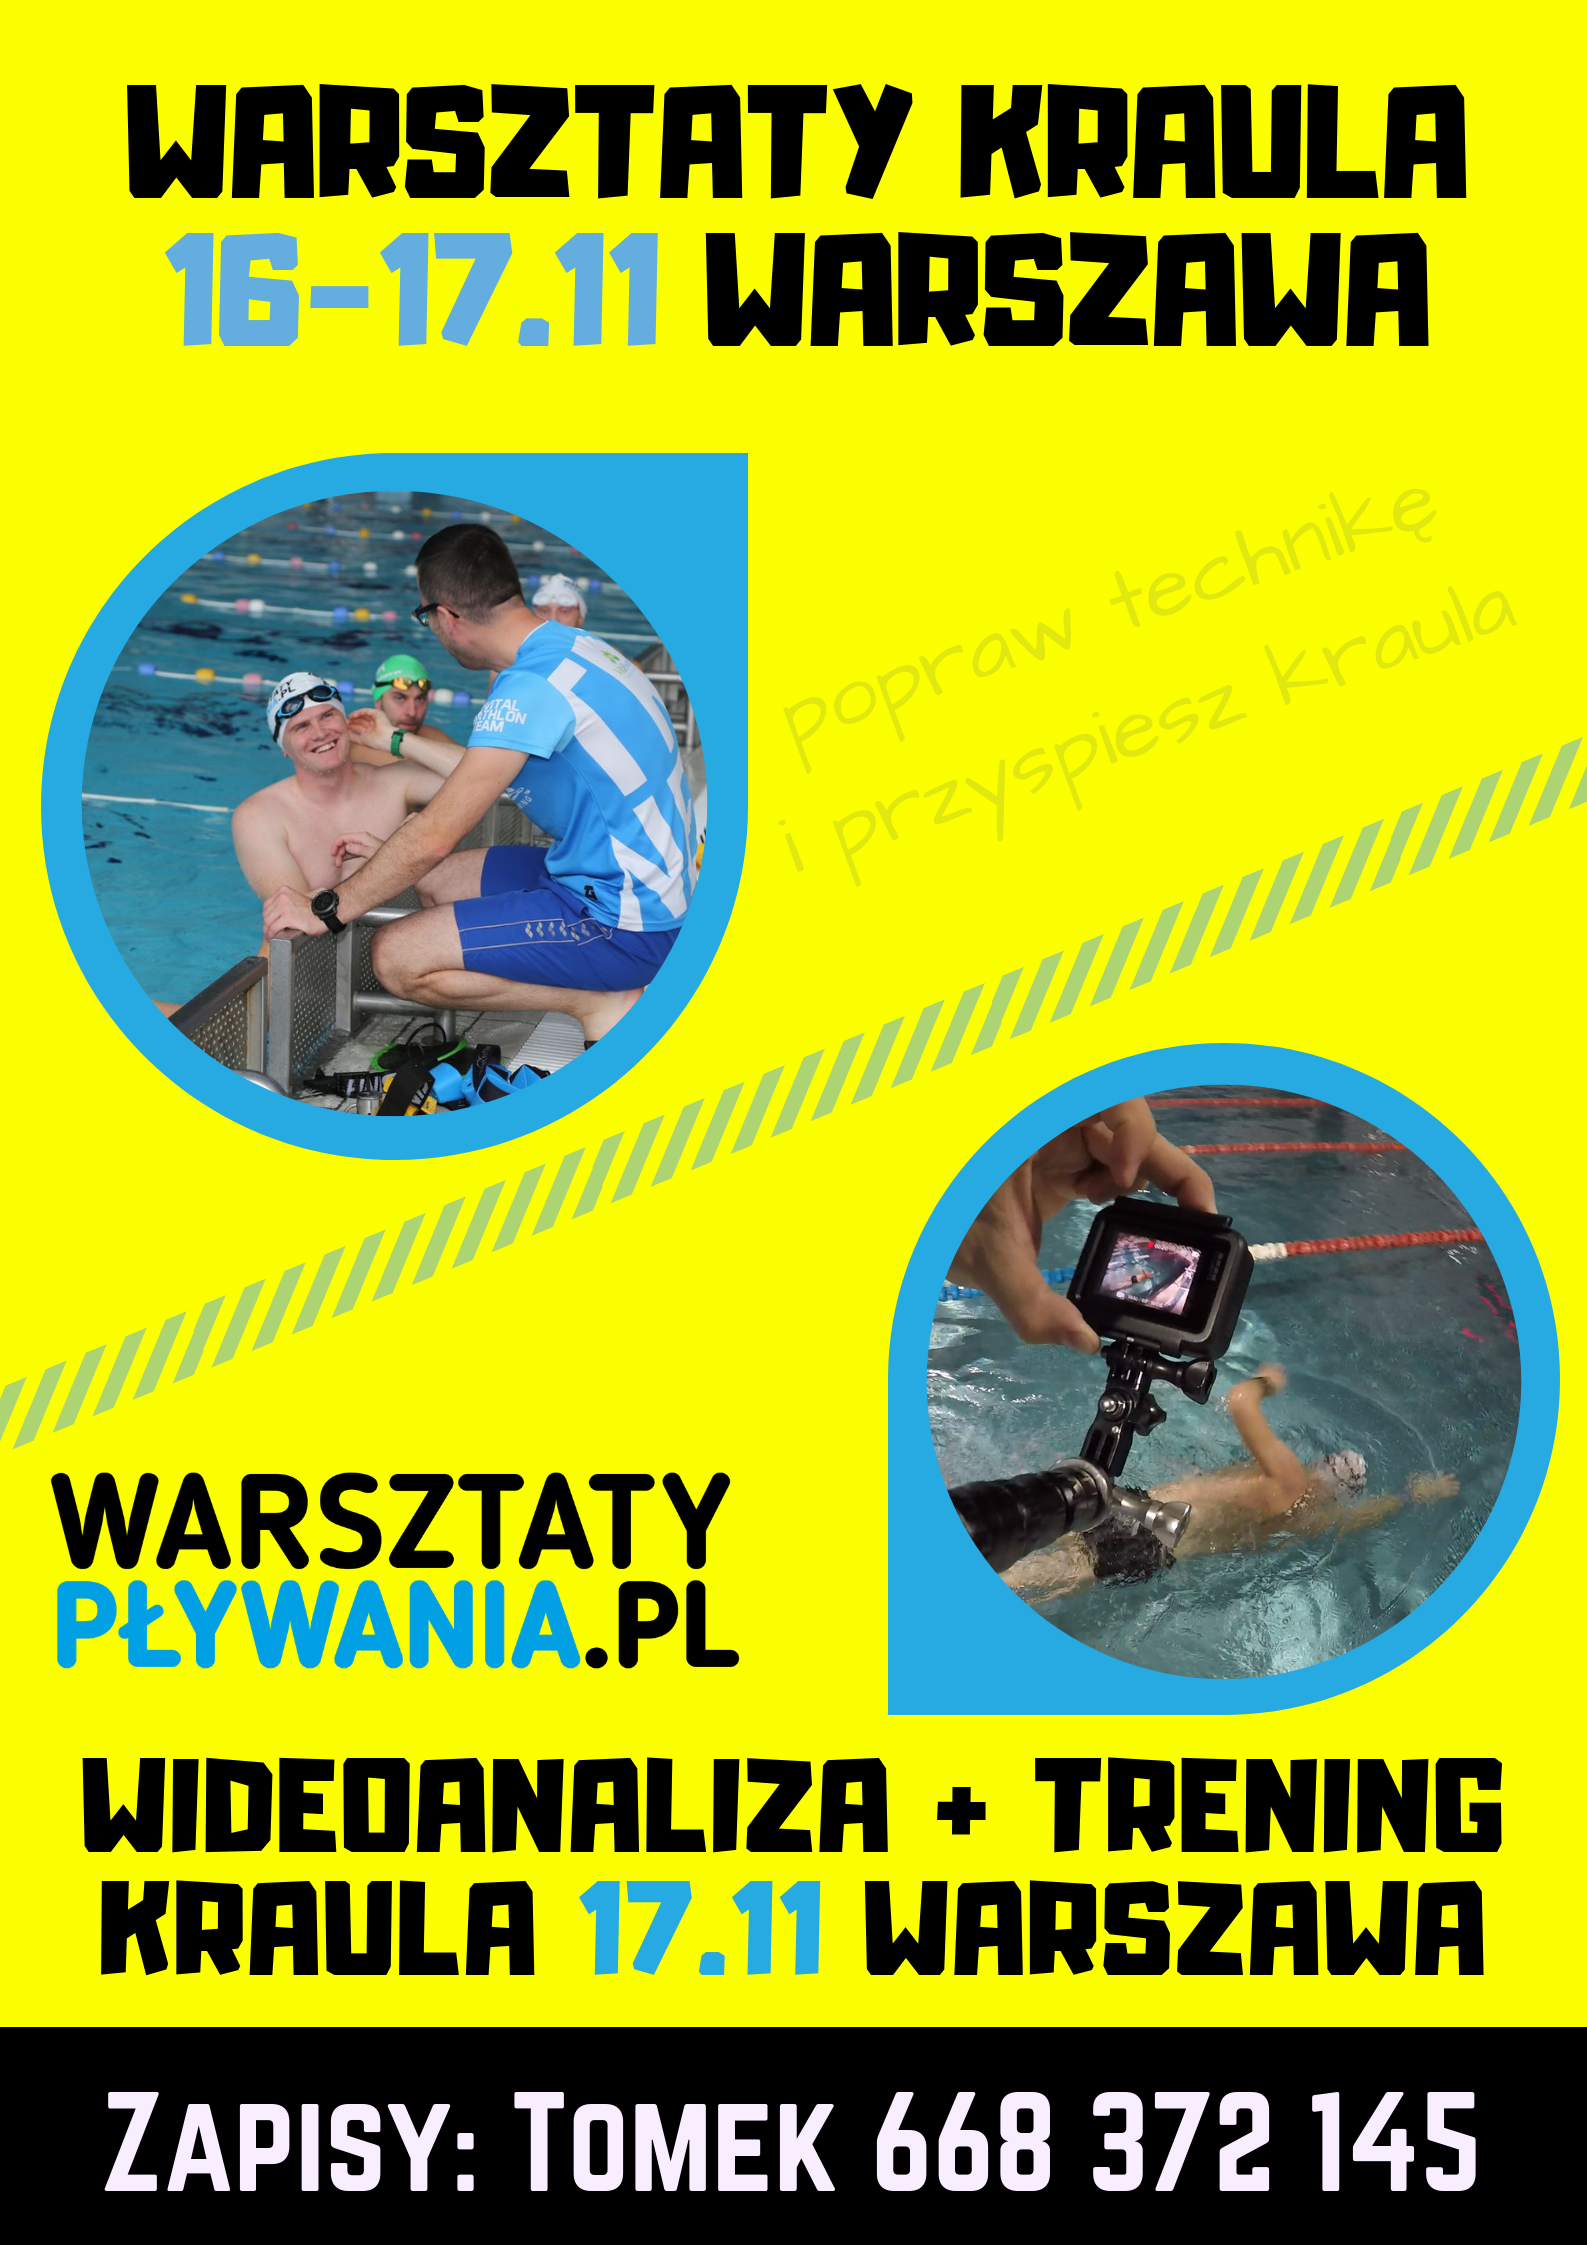 Logo Zawodów Warszawa: 4h Trening z wideoanalizą kraula 17.11.2019 | wideoanaliza.pl